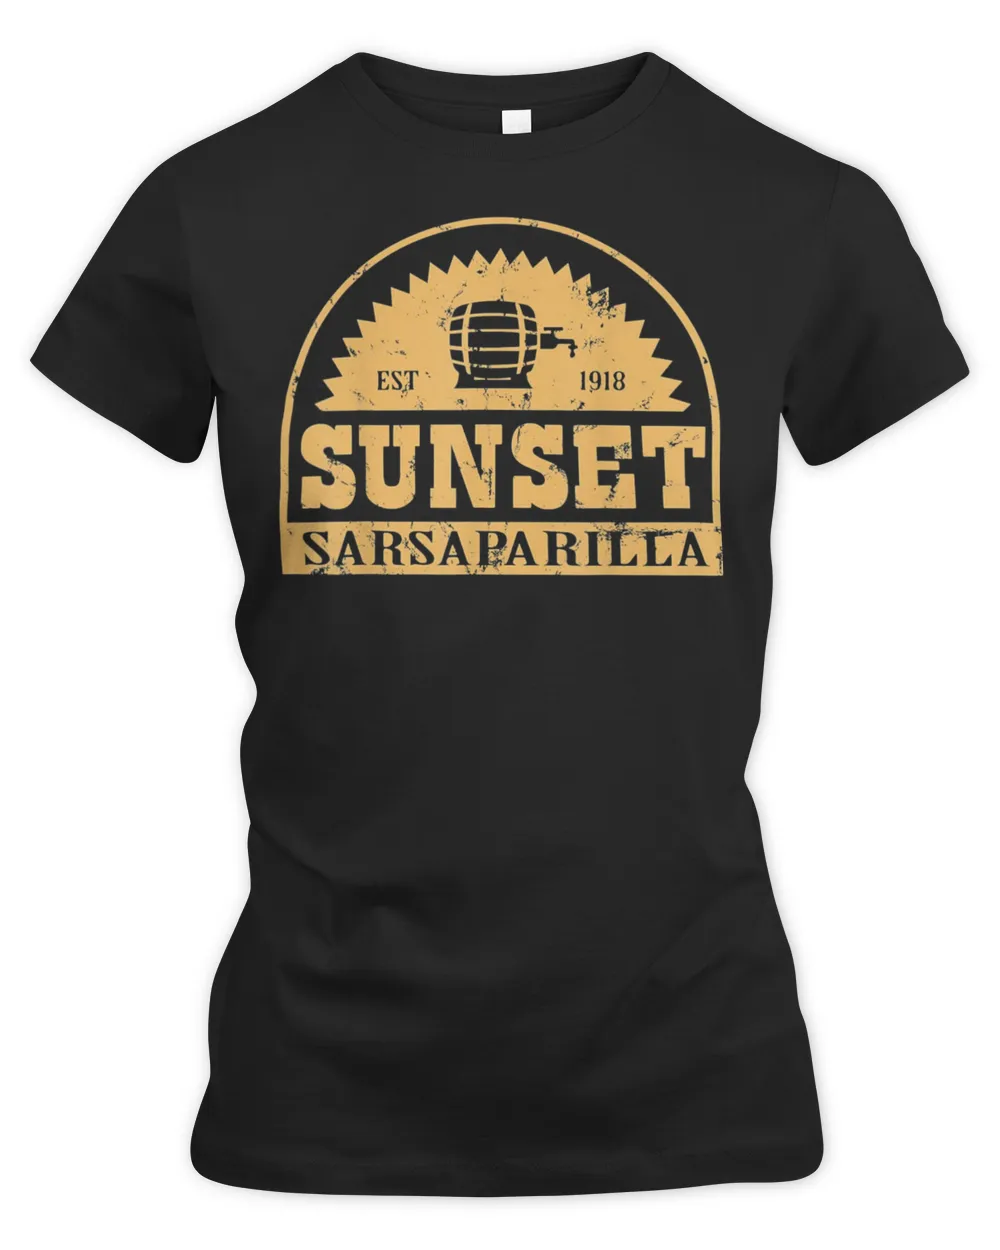 Sunset Sarsaparillas Est 1918 T-shirt